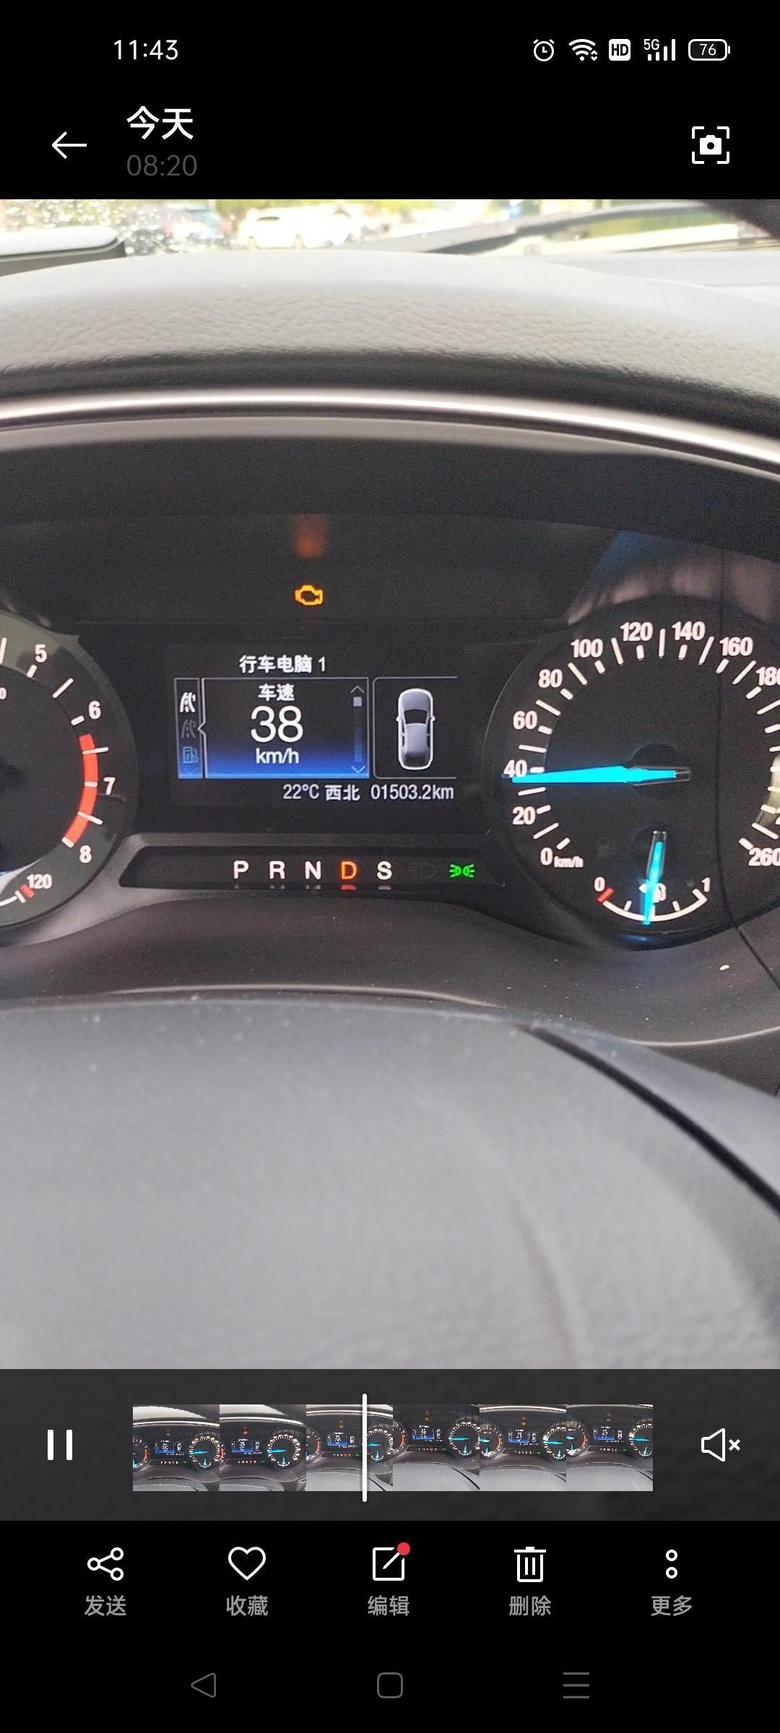 蒙迪欧1.5t新车上路1500公里，大清早的发动机故障灯居然亮了，我真的抑郁了，火大，瞬间心情不好了。求大神指点??